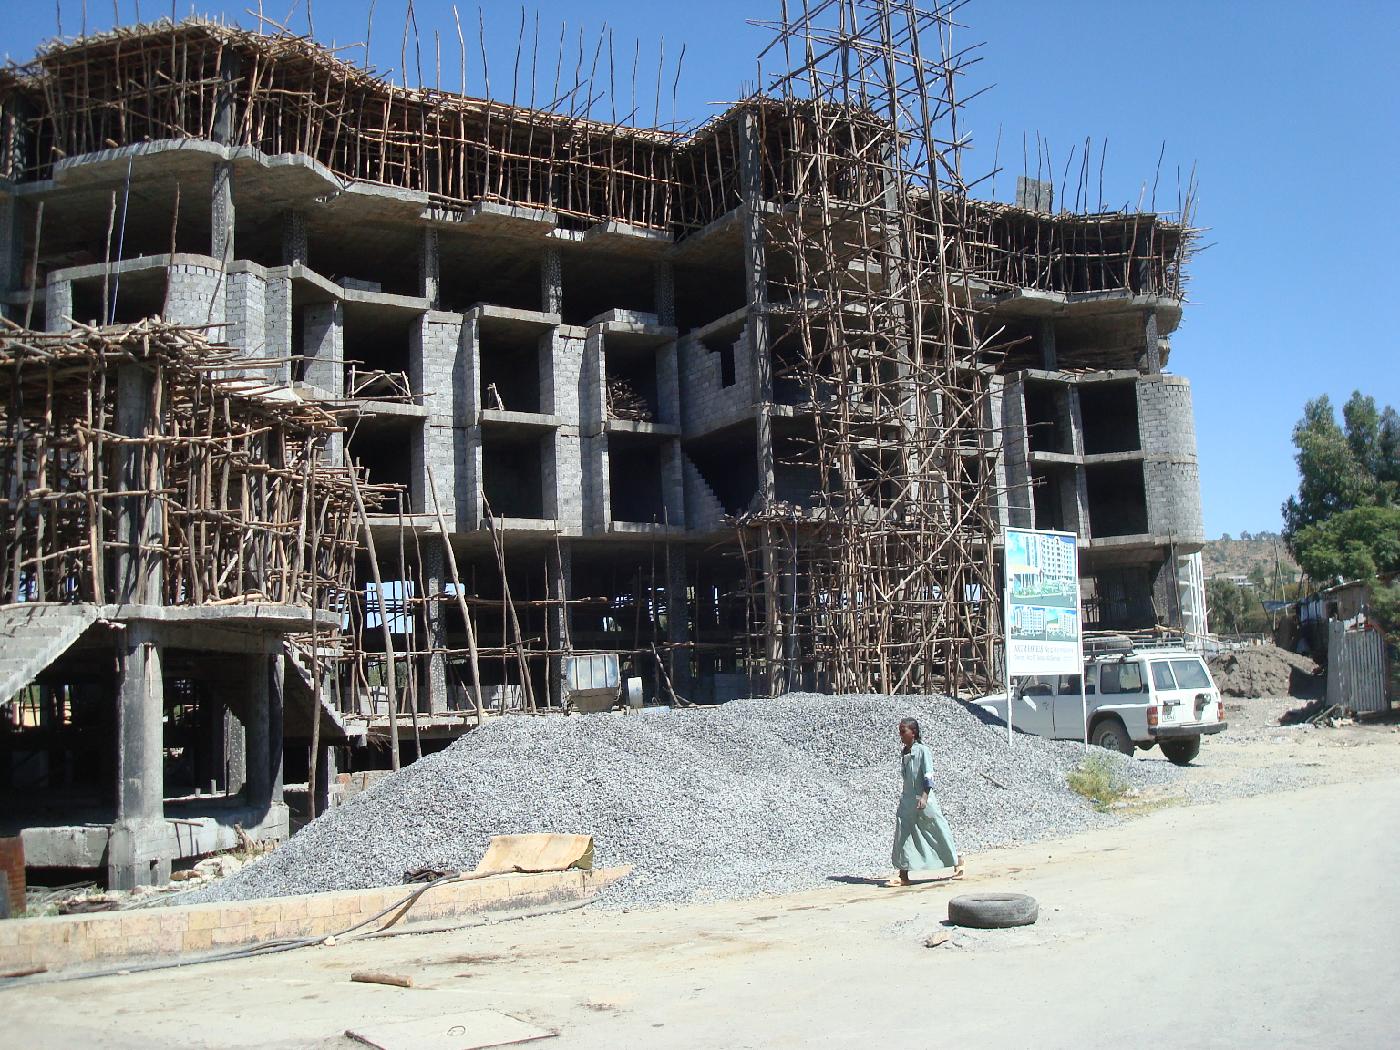 DSC030030.jpg - Immeuble en construction  Mekele, avec des chafaudages en bois deucalyptus